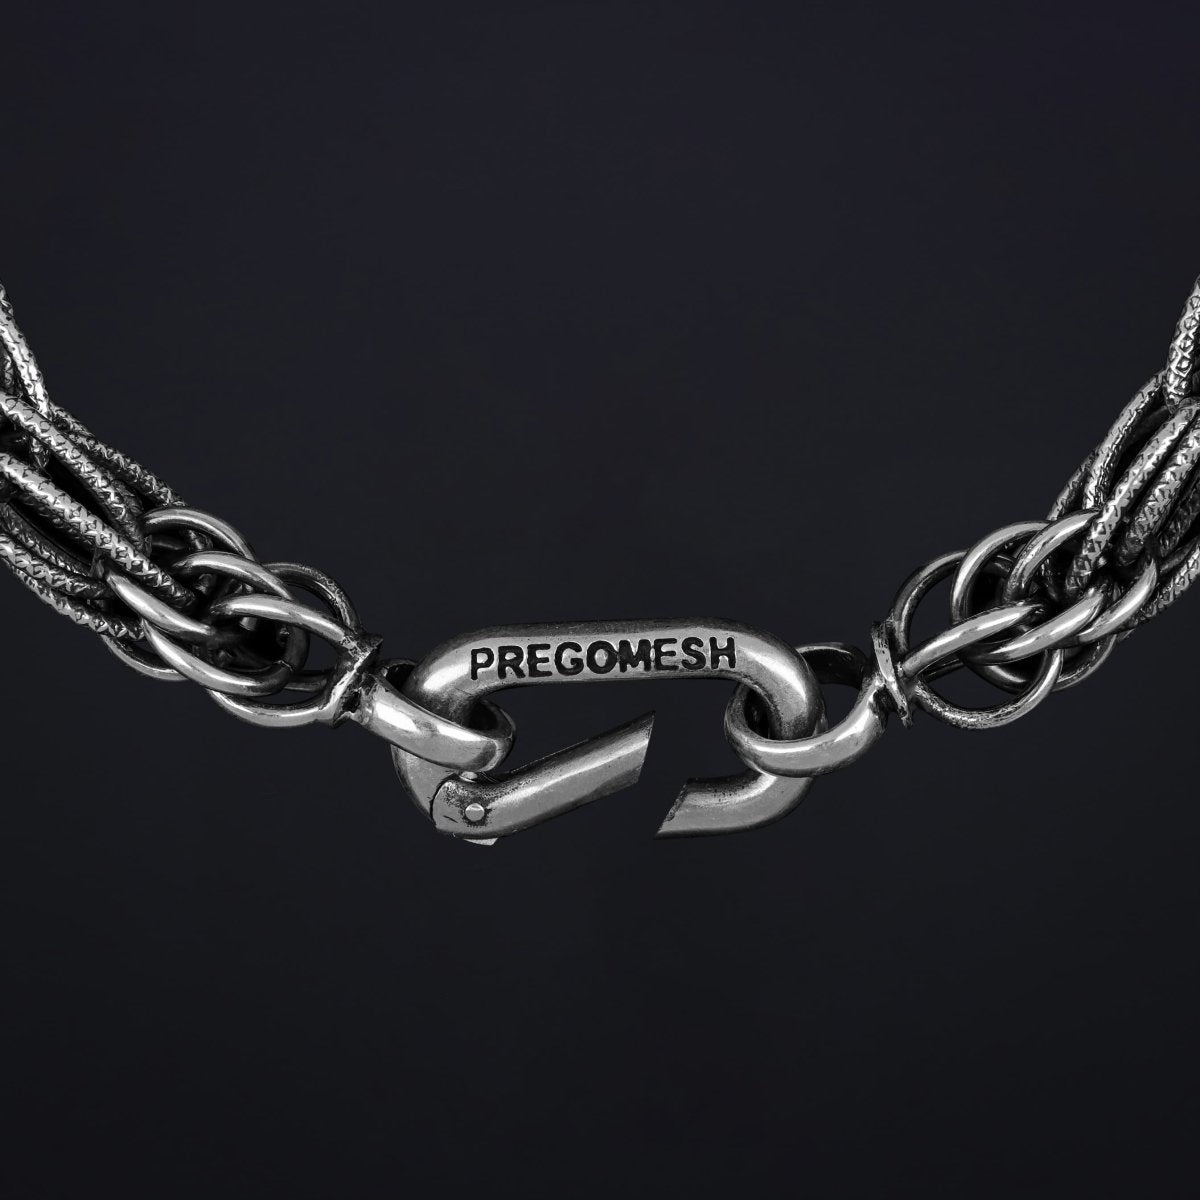 Bracelet “Carabiner” - Pregomesh